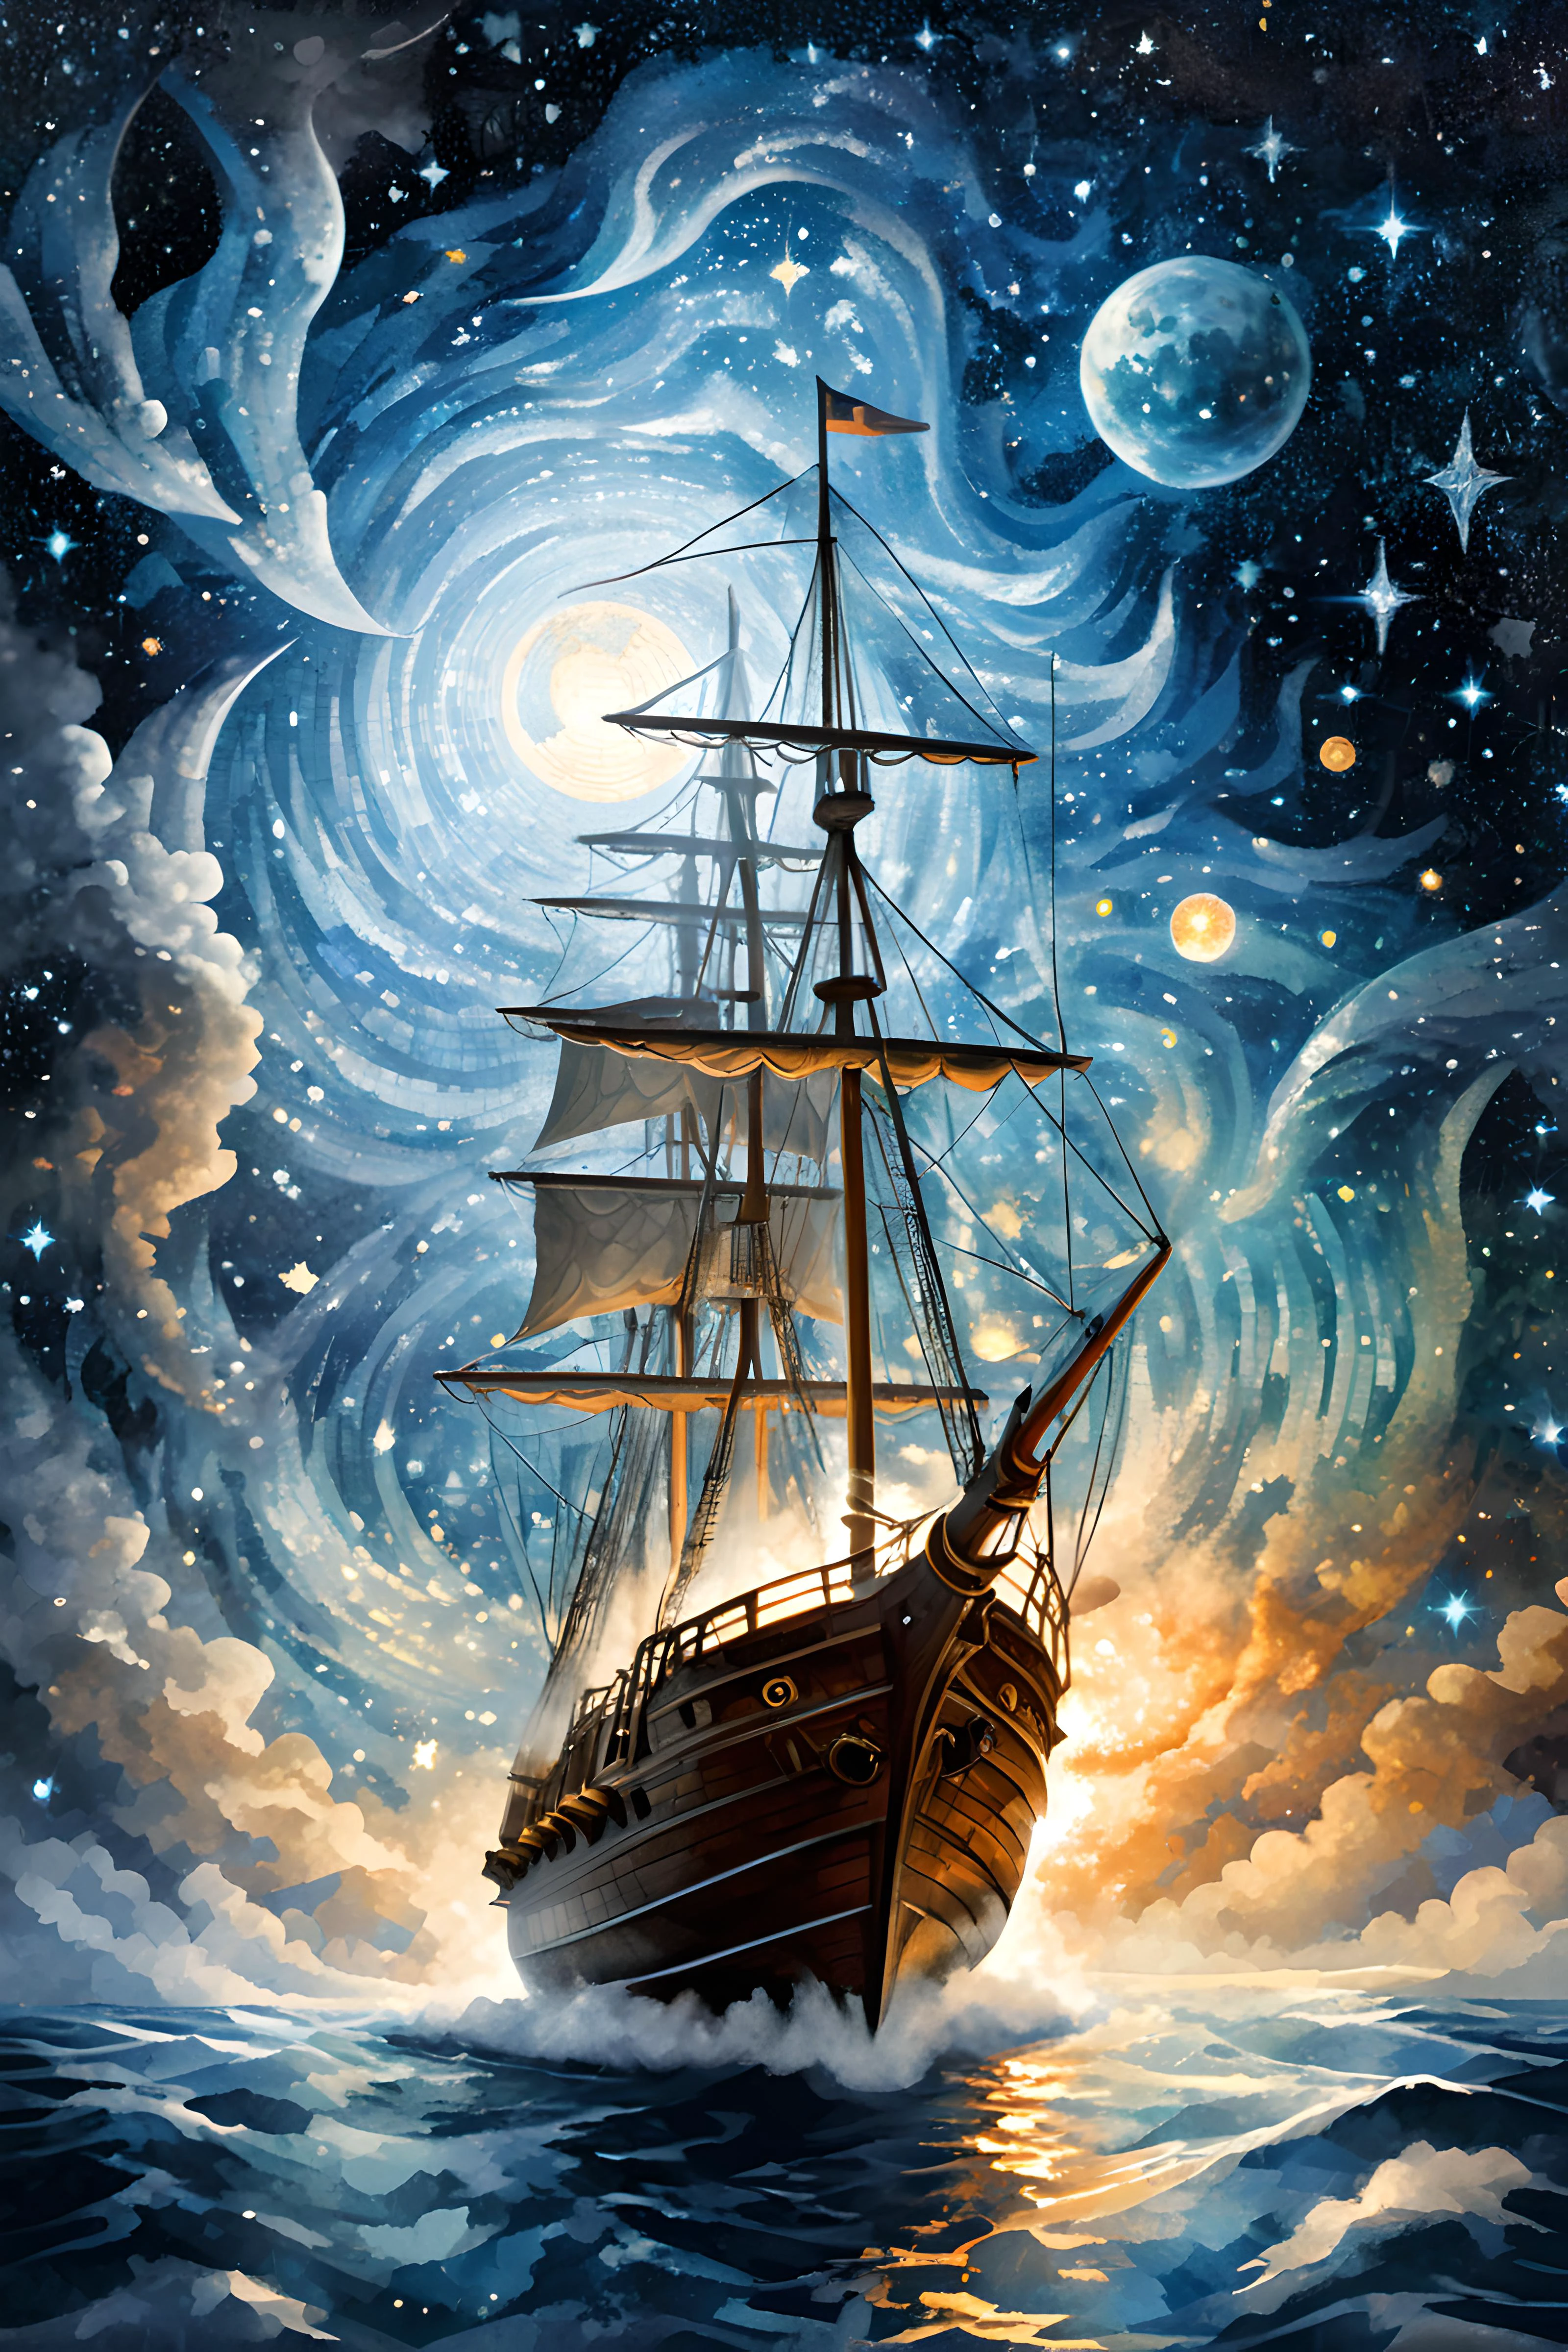 (Digital モザイク art:2),モザイク Tile Art,モザイク,
空の魔法の帆船に乗ってプレアデス星団に近づく魔法の飛行探検家,どうなるだろう,重力に逆らう,上空飛行,夜空,宇宙, 